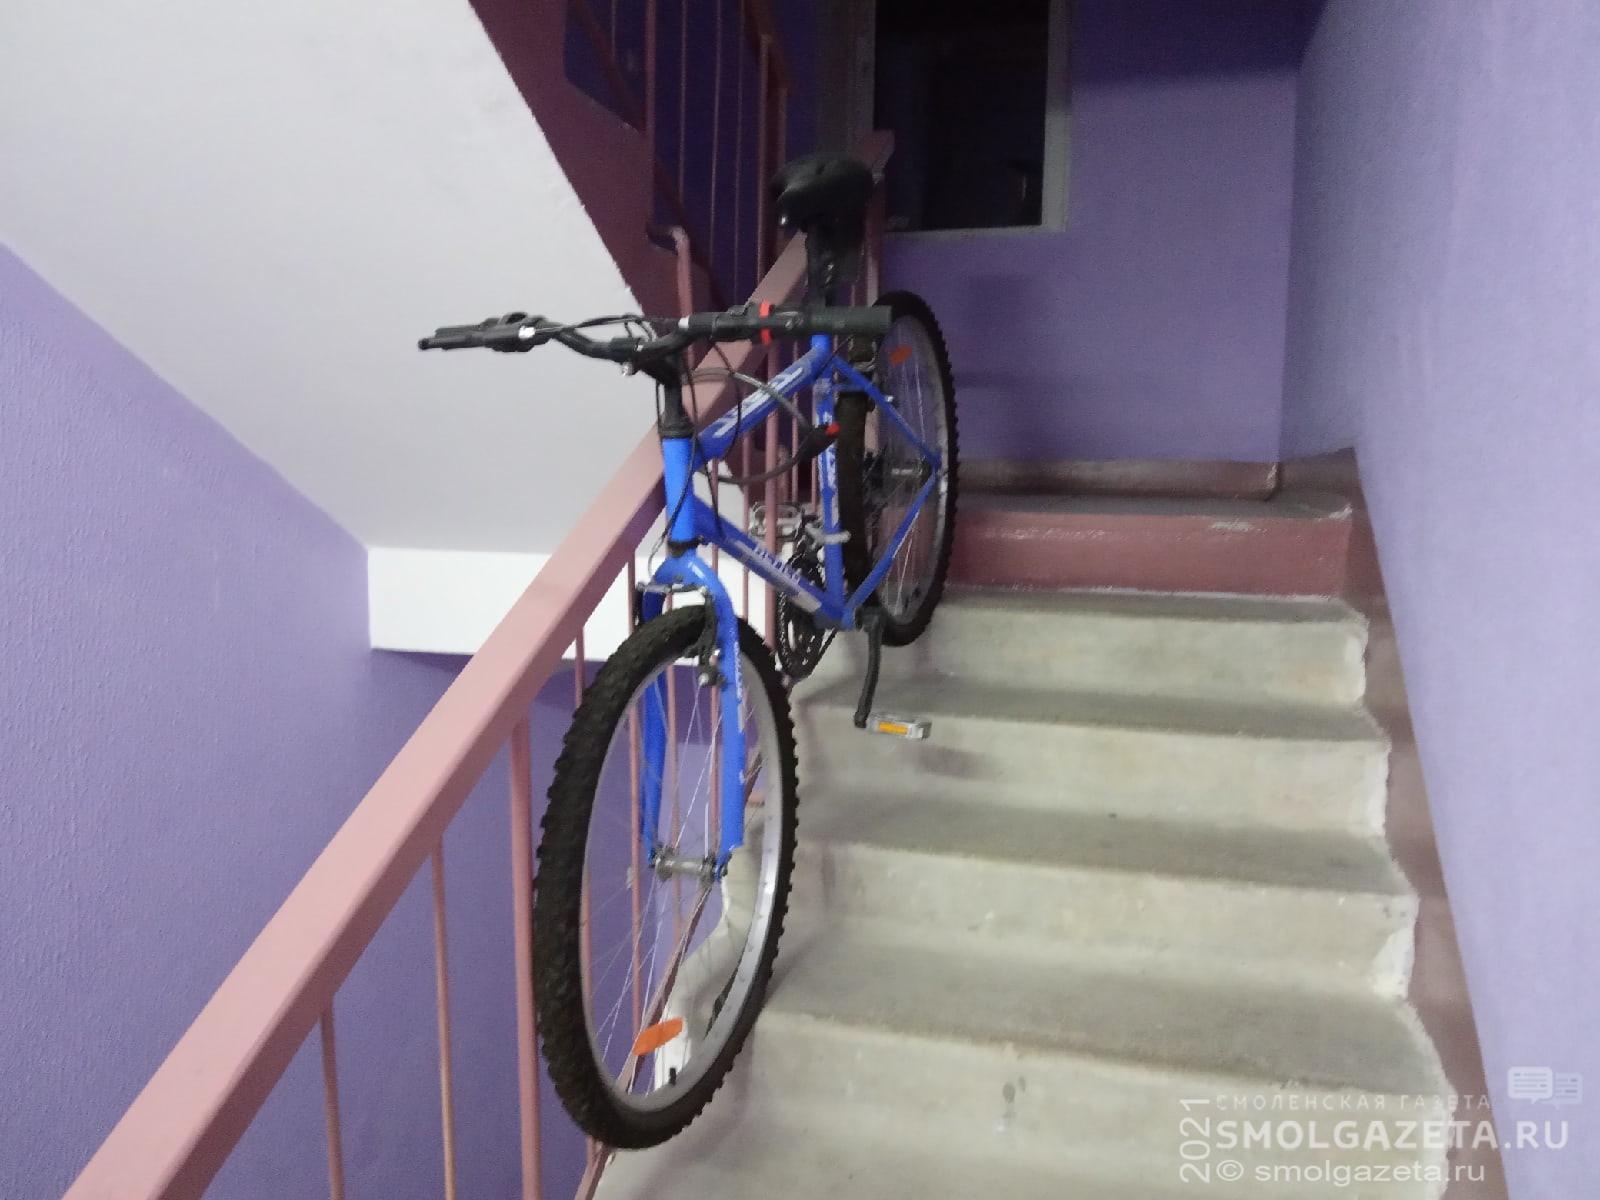 В Смоленске из подъезда украли велосипед стоимостью 10 тысяч рублей